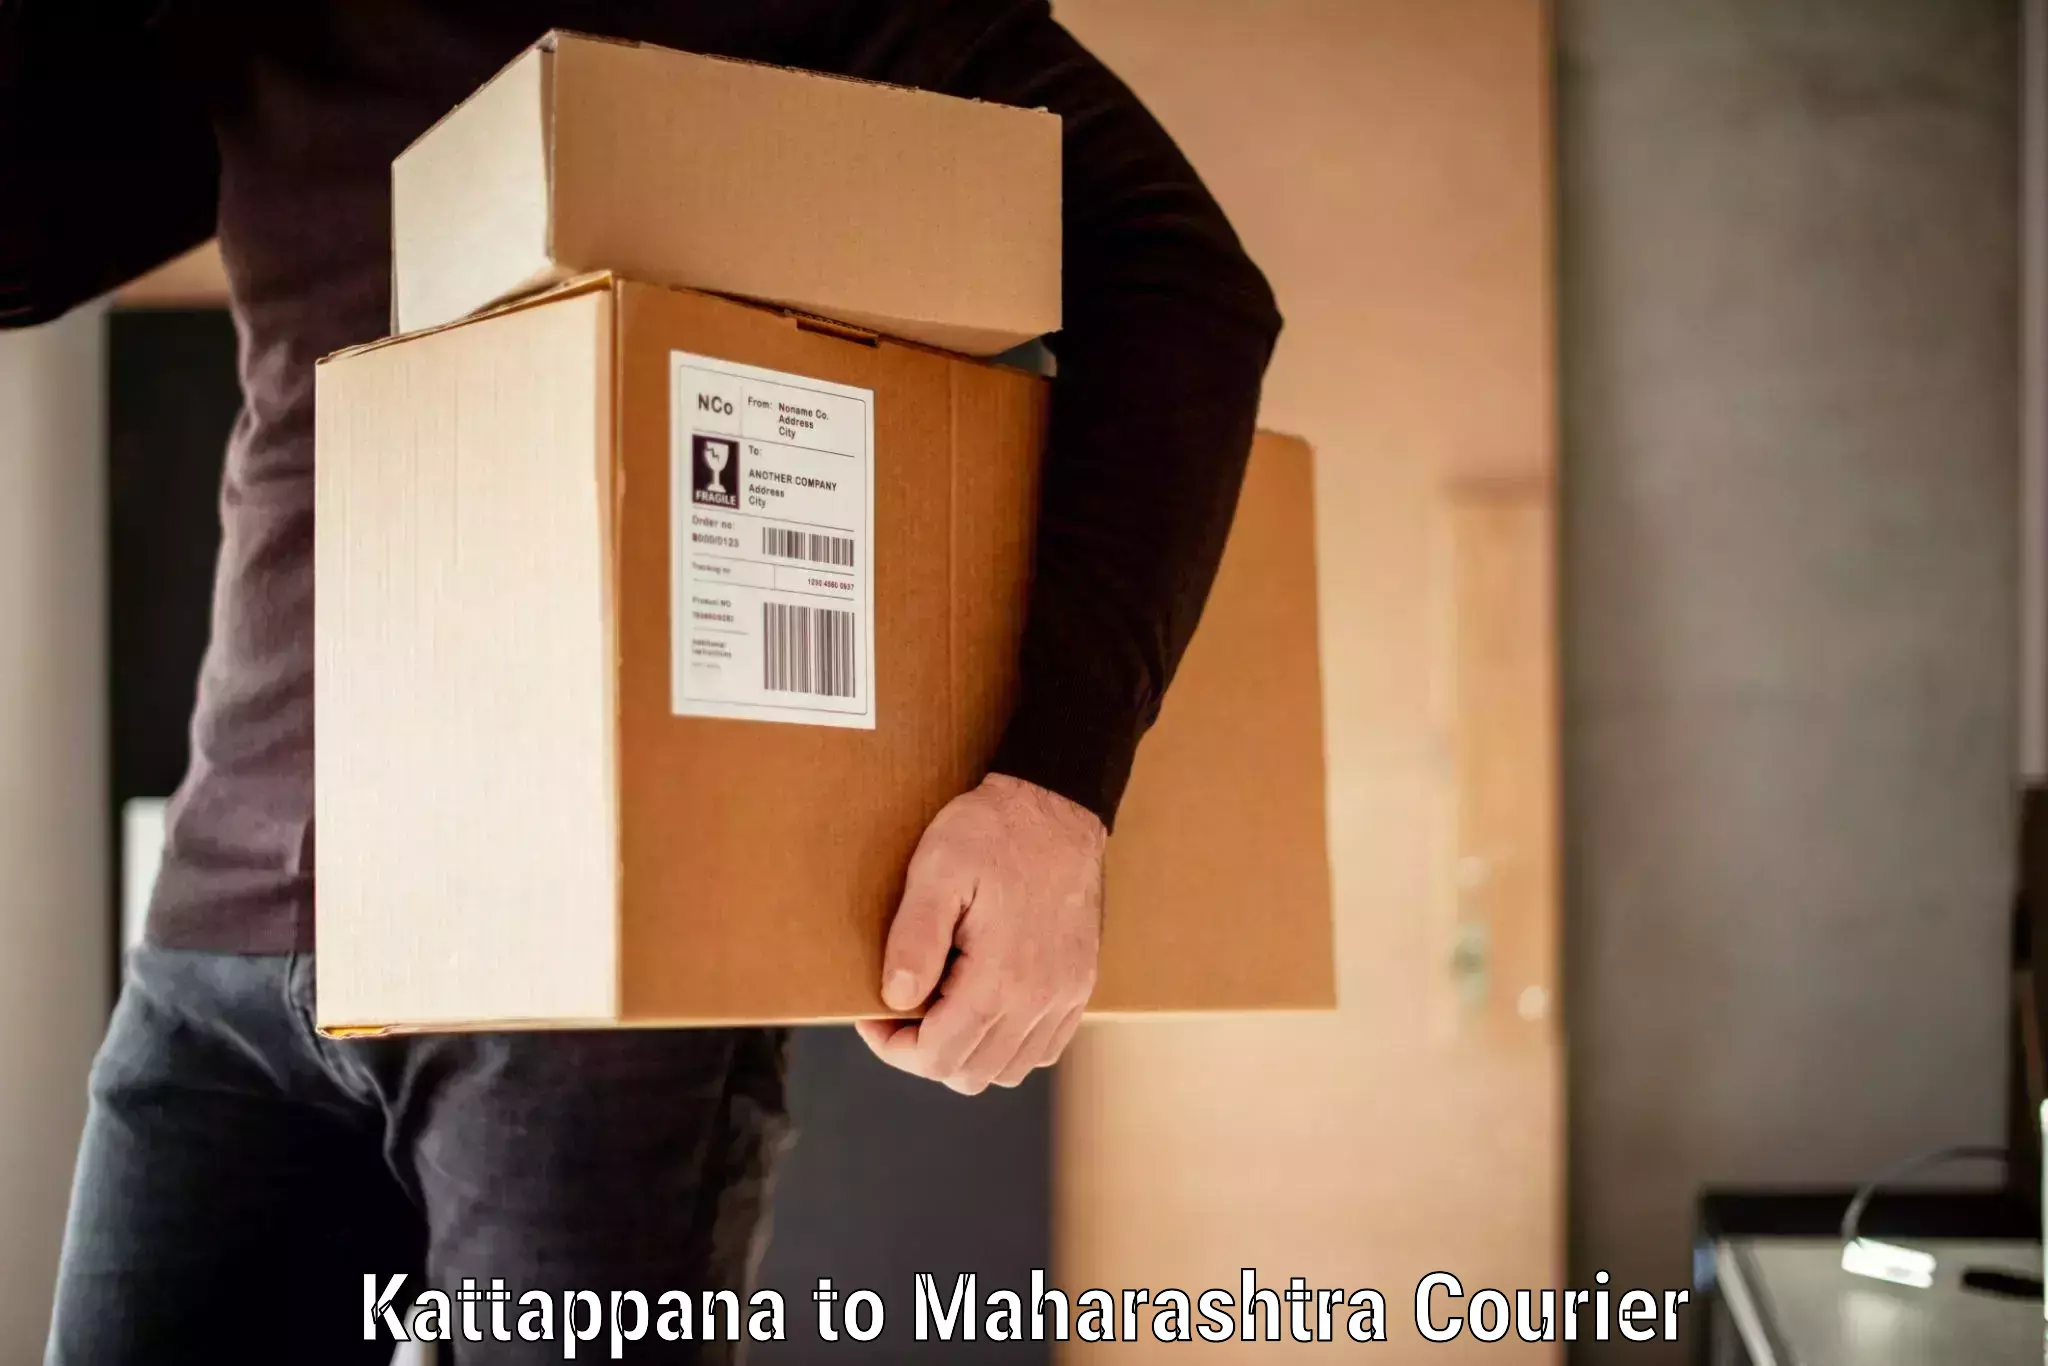 Luggage transport service Kattappana to Maharashtra